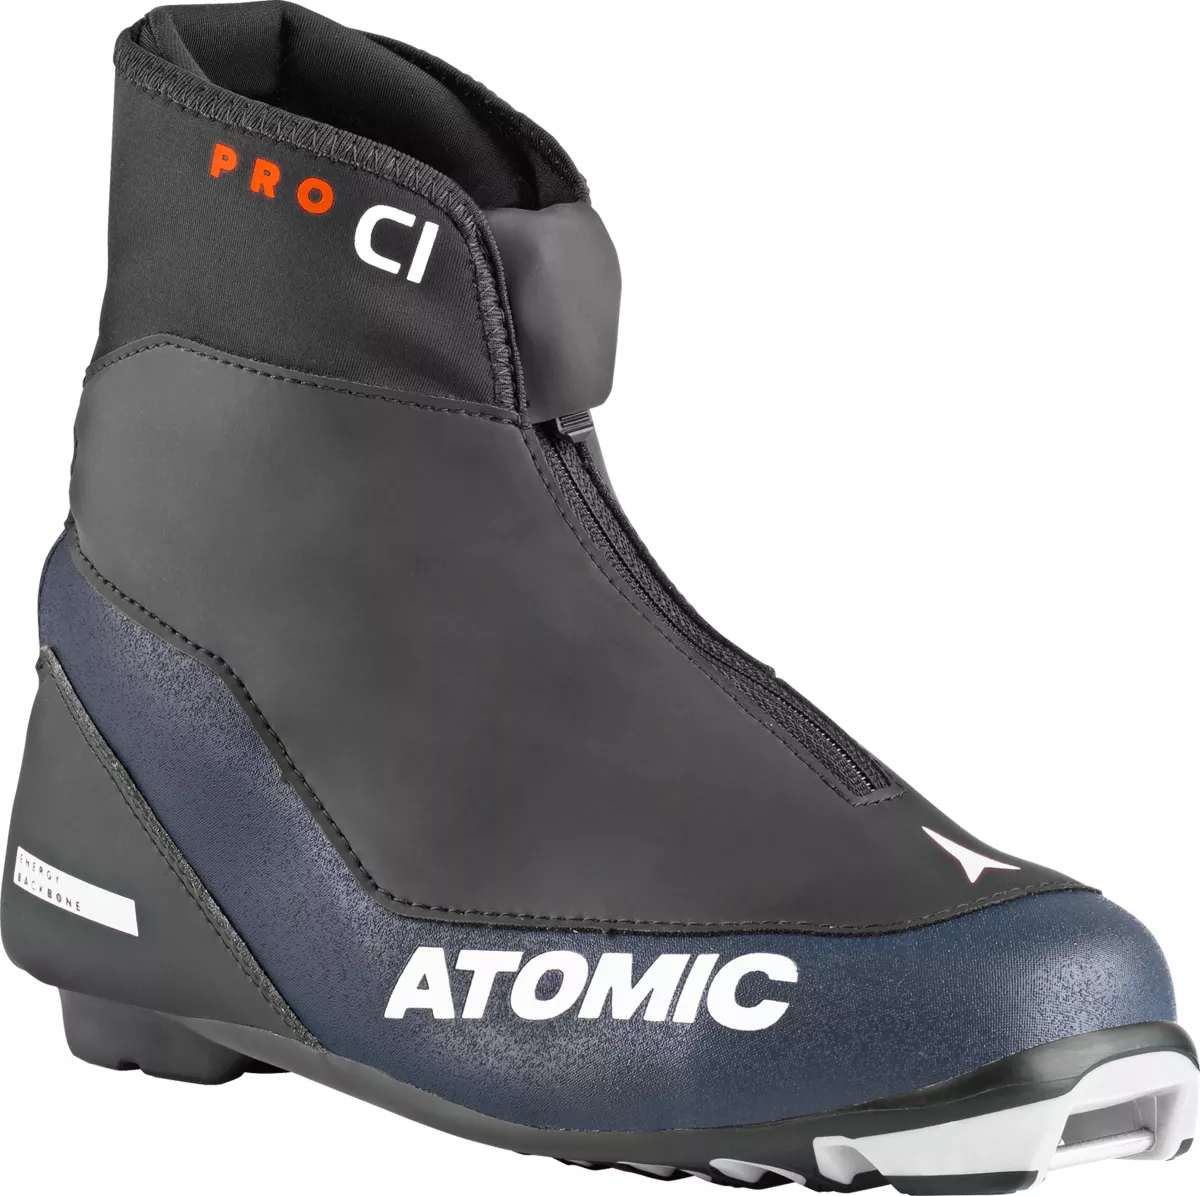 Atomic Pro C1 W sífutó cipő, black-blue-white, PROLINK